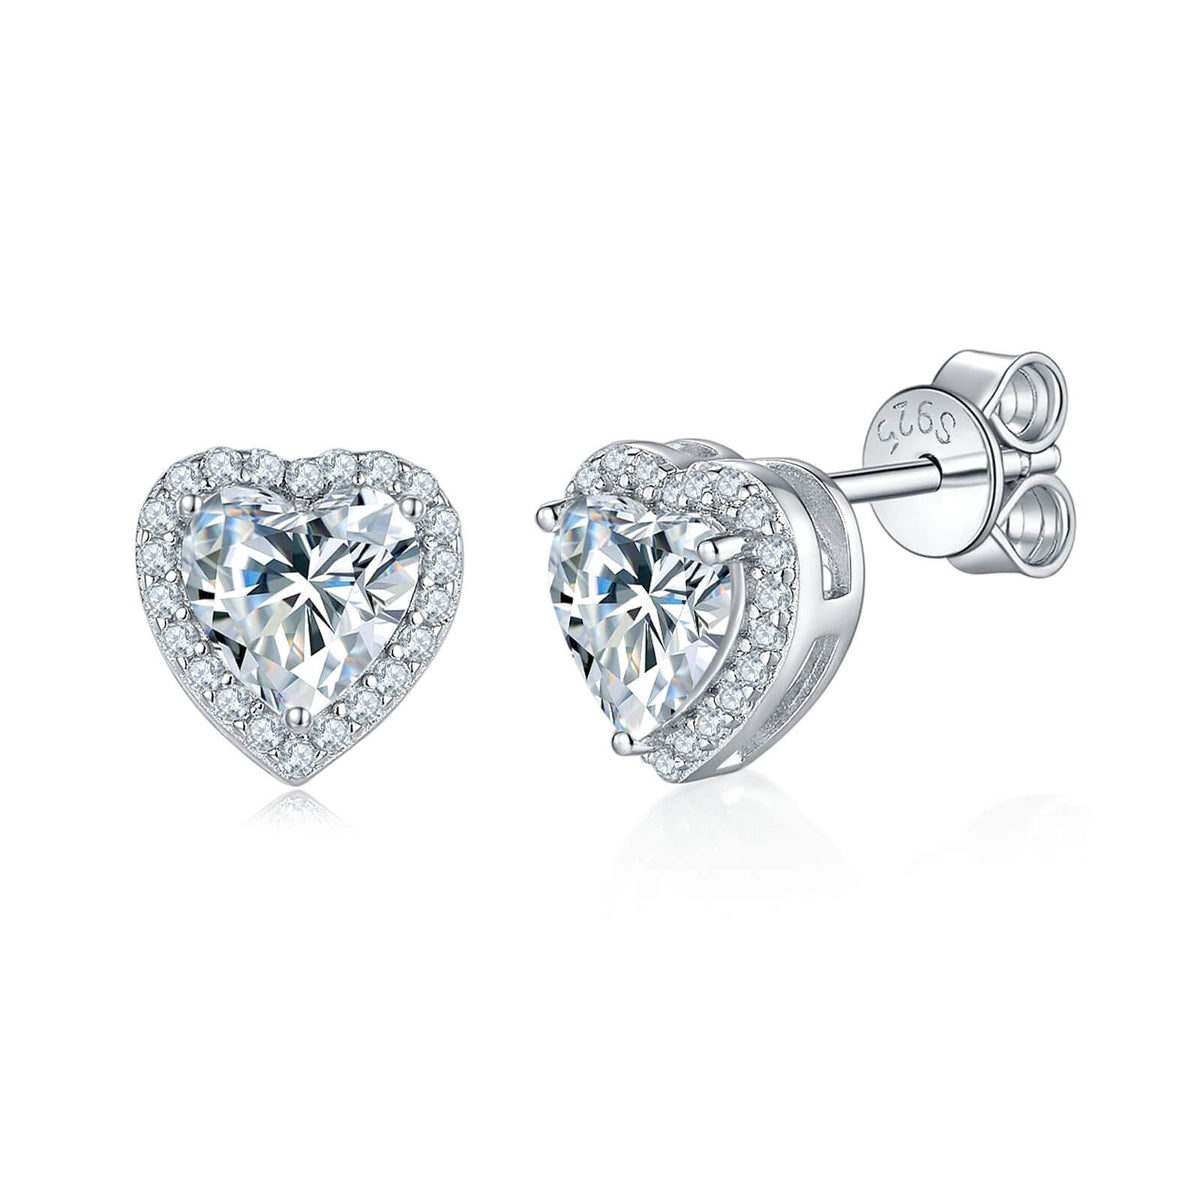 BOYA 1.78 CTW Heart Sapphire Halo Stud Earrings in 925 Sterling Silver